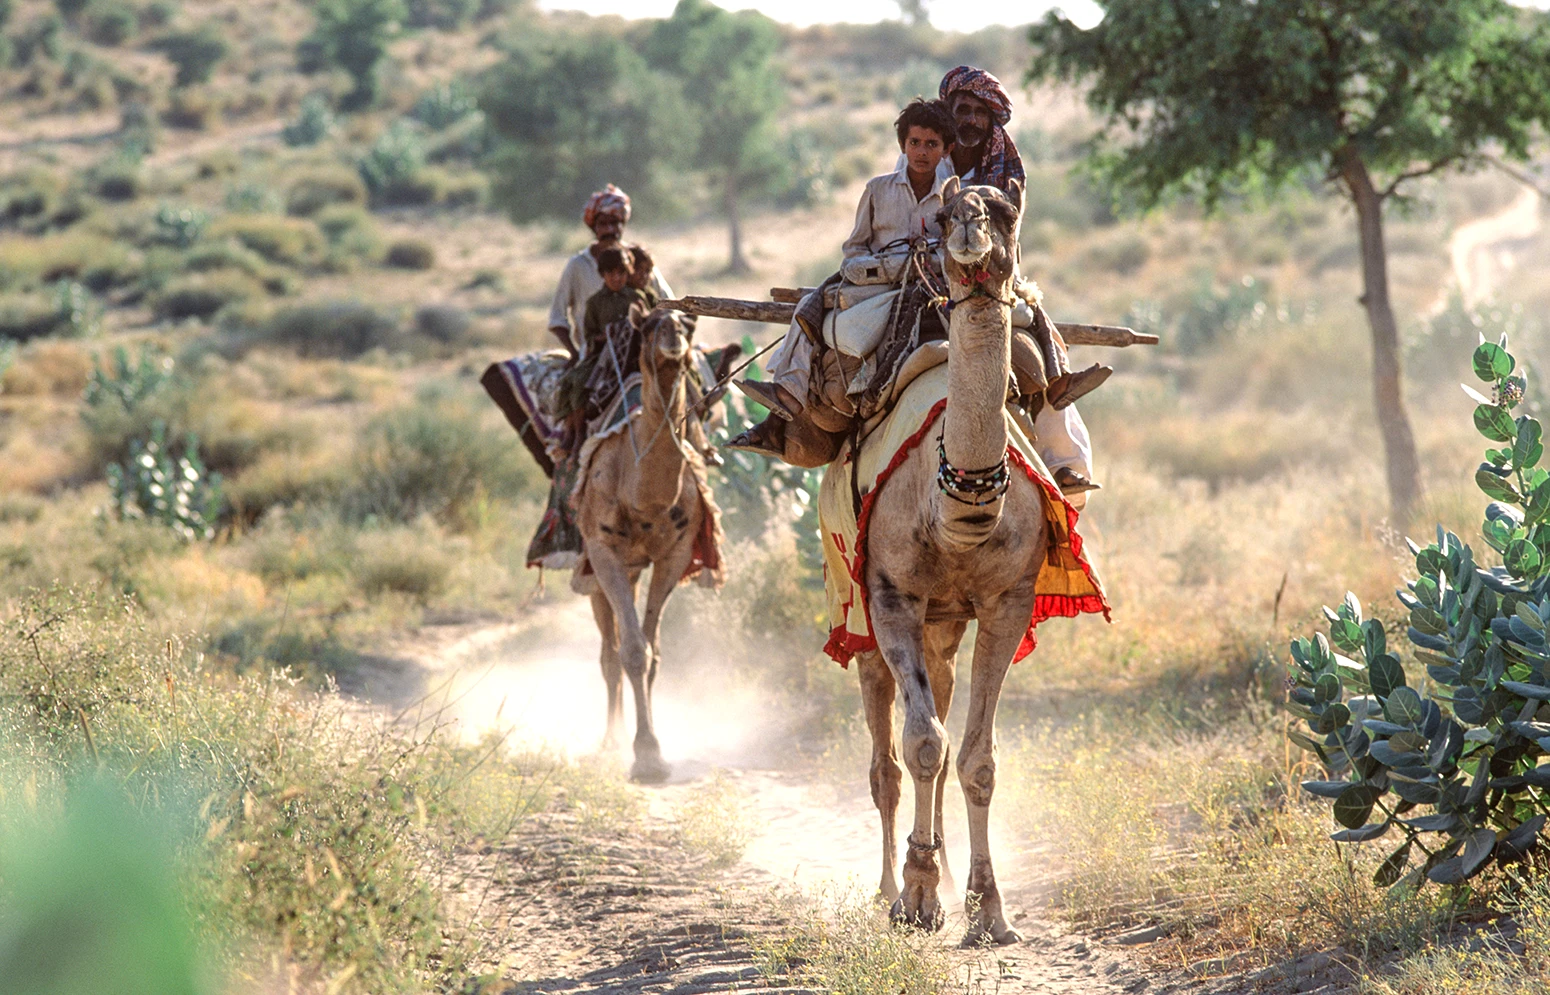 Thari-Nomaden auf Kamelrücken. Thar-Wüste, Pakistan.